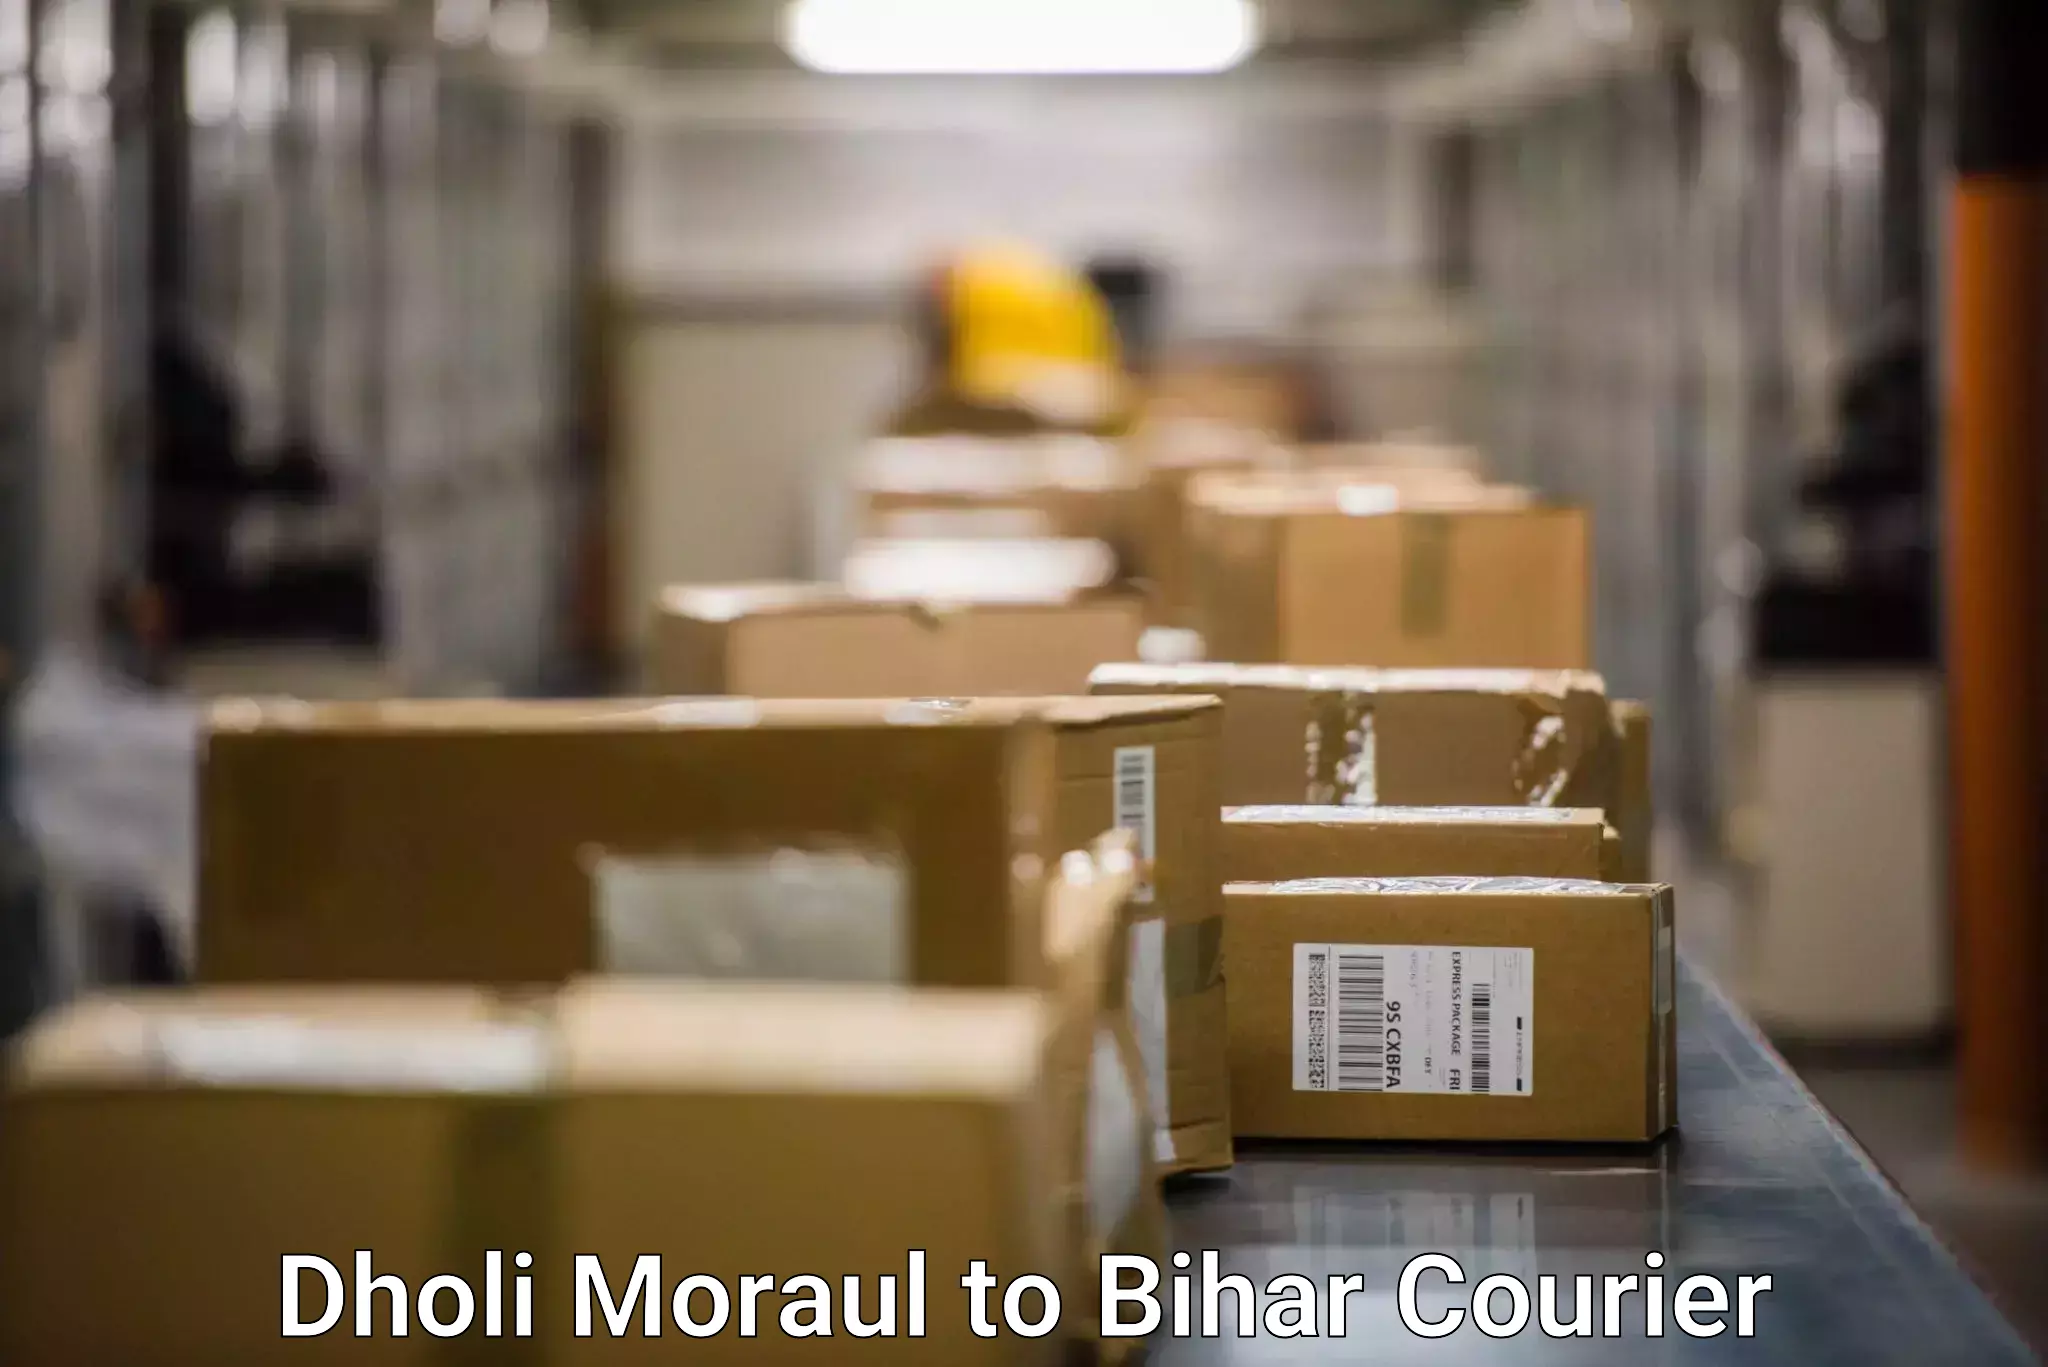 Reliable logistics providers Dholi Moraul to Kamtaul